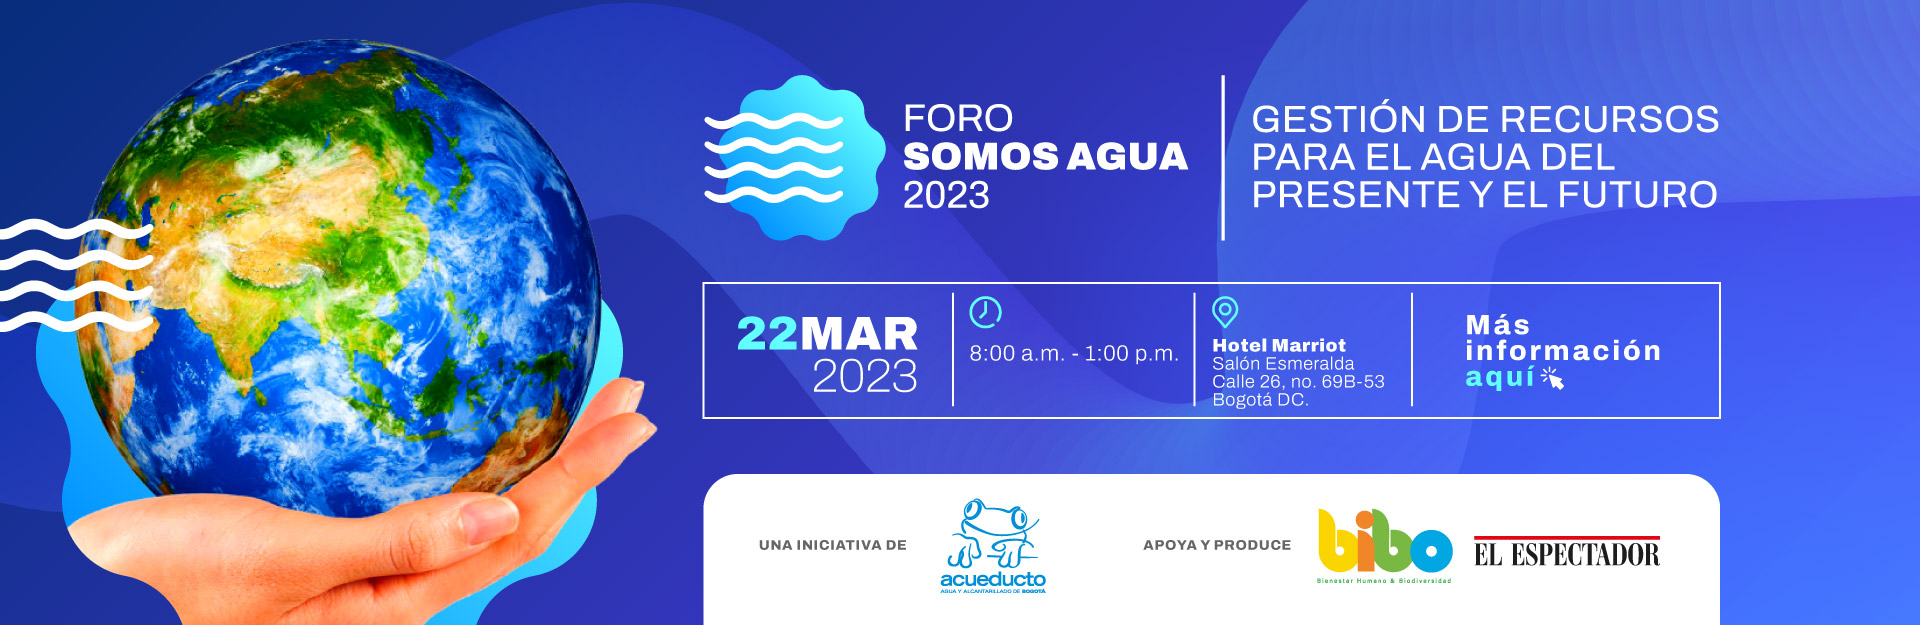 Foro Somos Agua 2023: Un llamado a la acción por el presente y futuro del agua